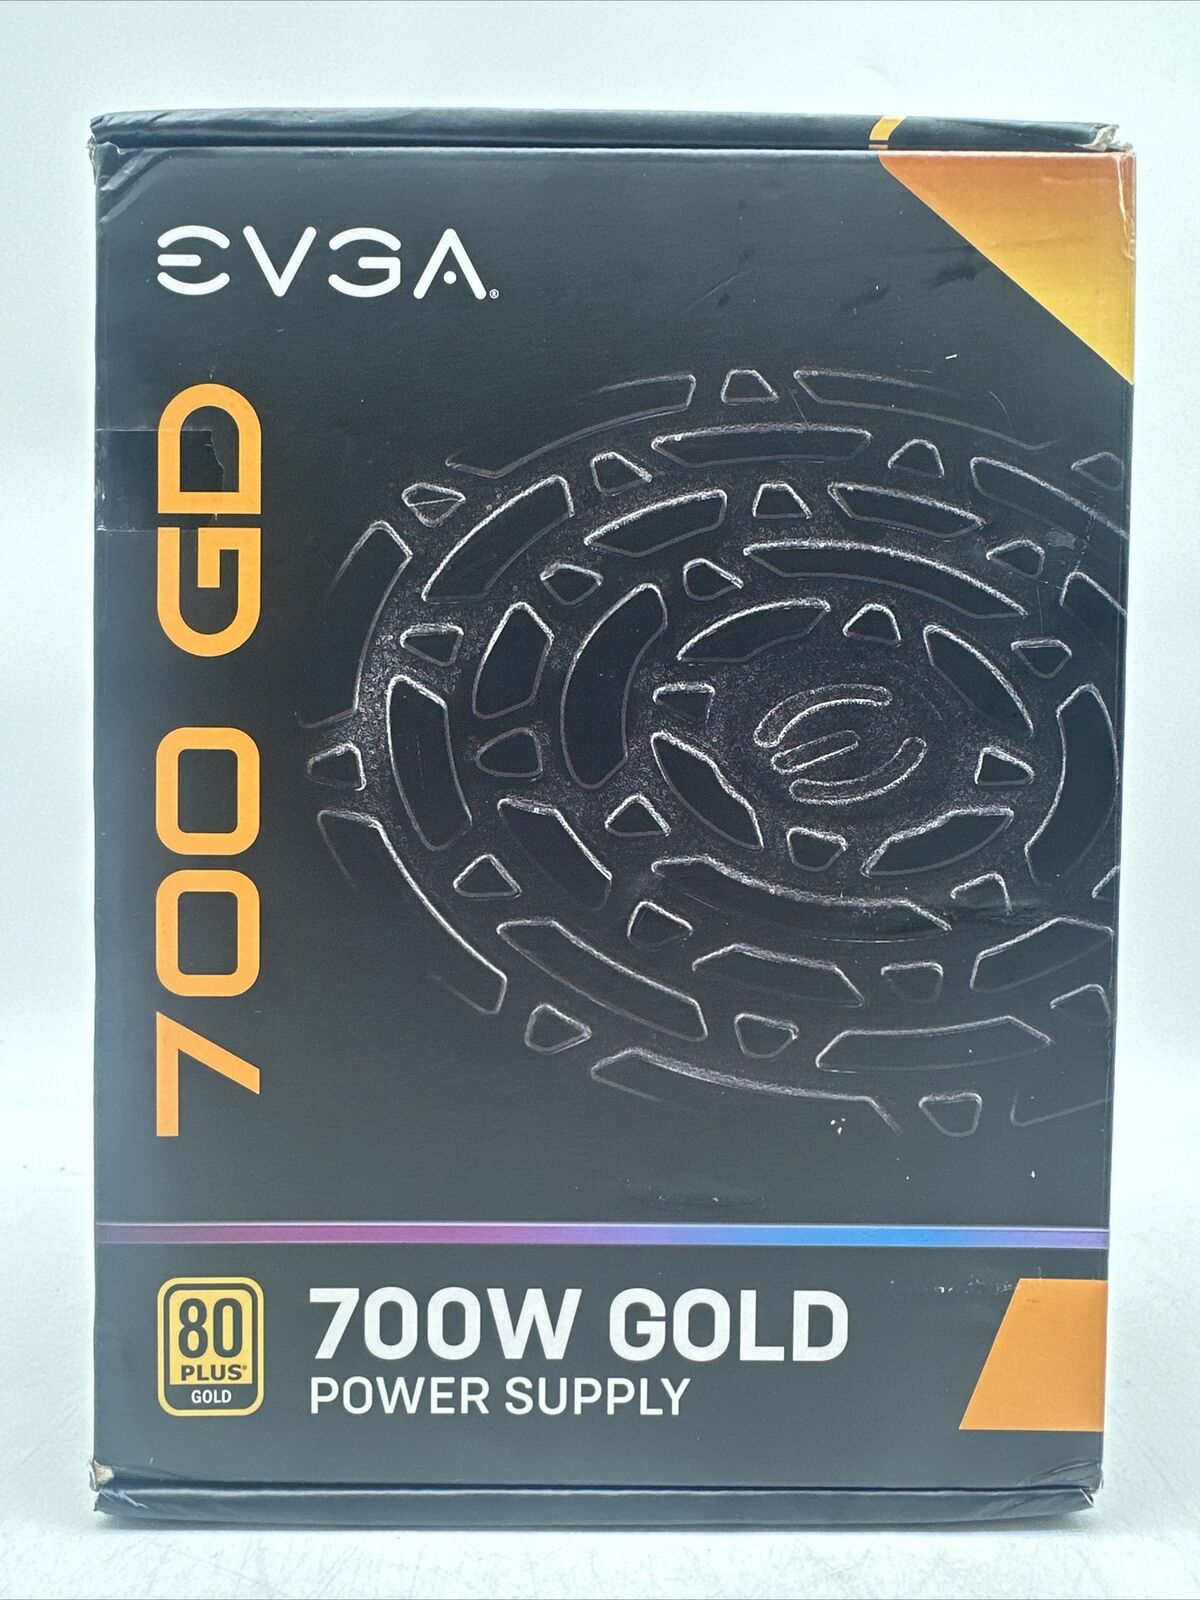 EVGA 700 GD Power Supply (100GD0700V1)